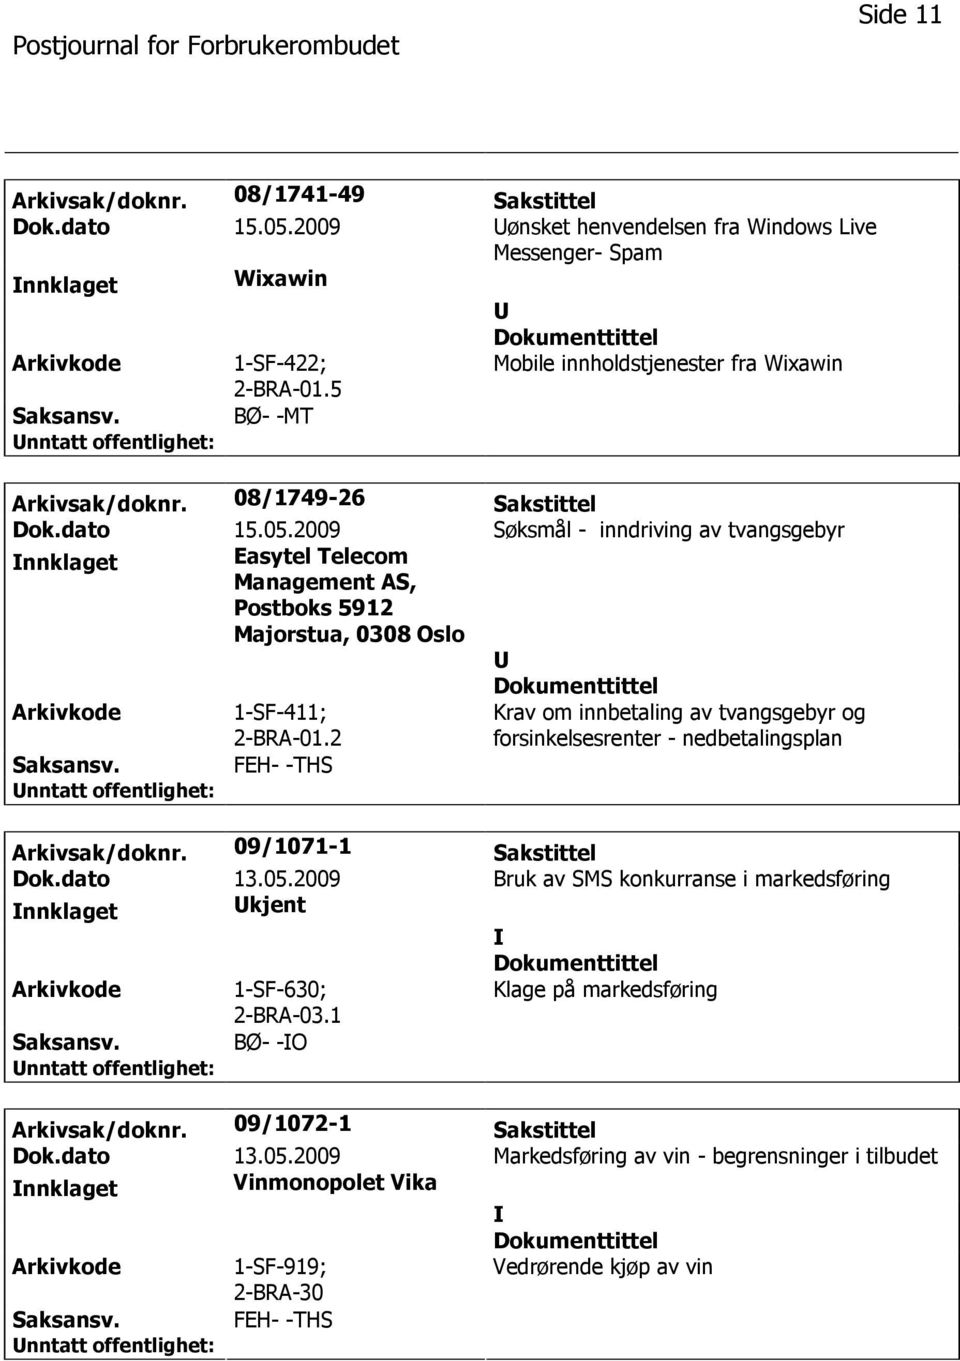 2009 Søksmål - inndriving av tvangsgebyr nnklaget Easytel Telecom Management AS, Postboks 5912 Majorstua, 0308 Oslo 1-SF-411; 2-BRA-01.